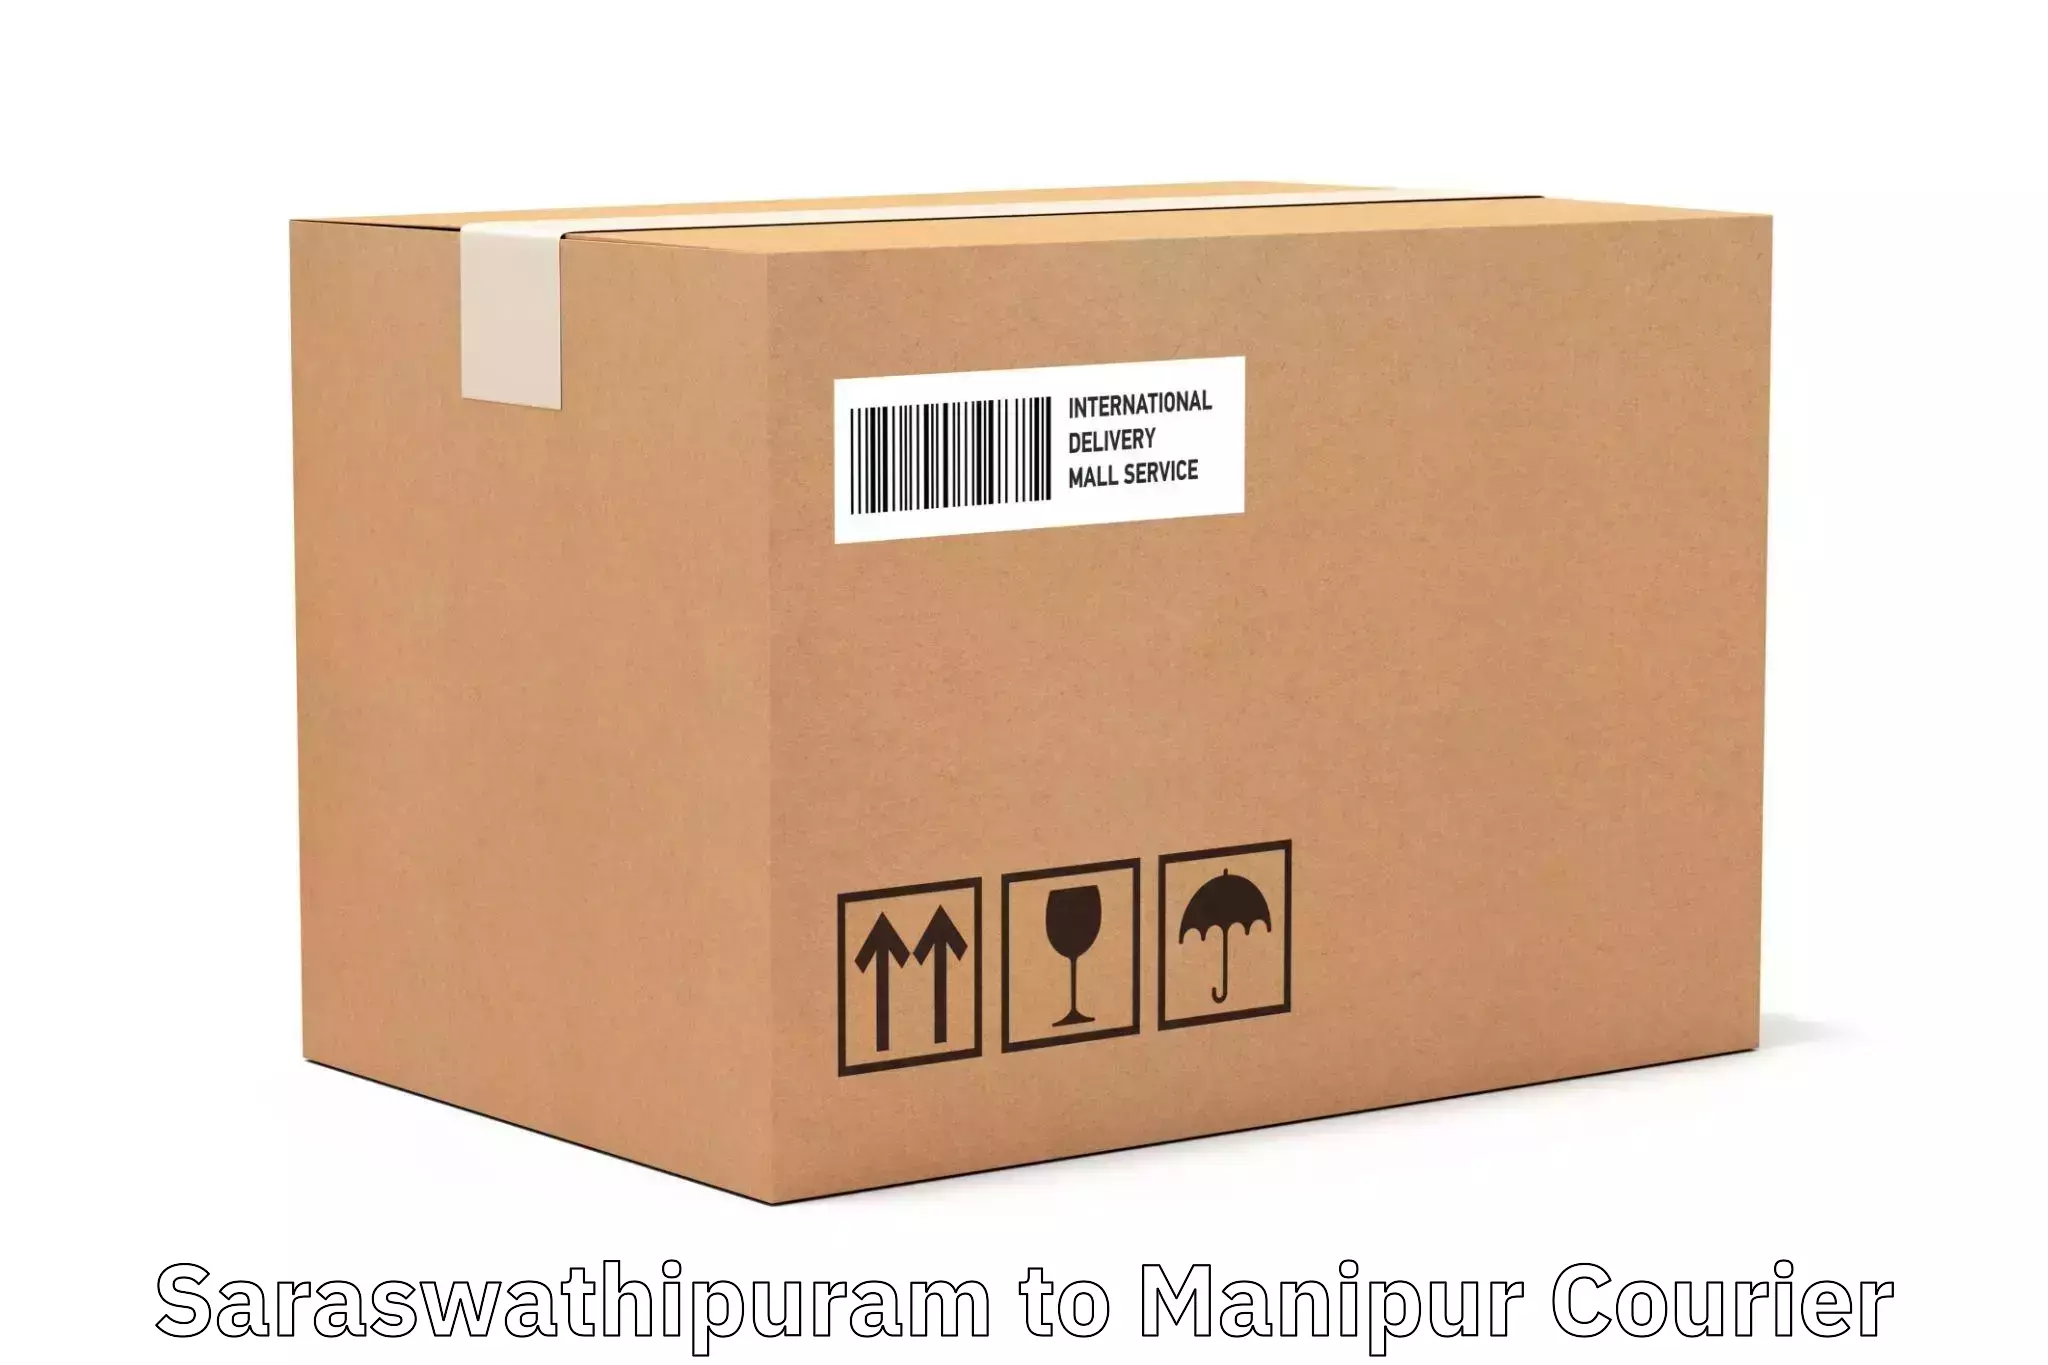 Regular parcel service Saraswathipuram to Imphal